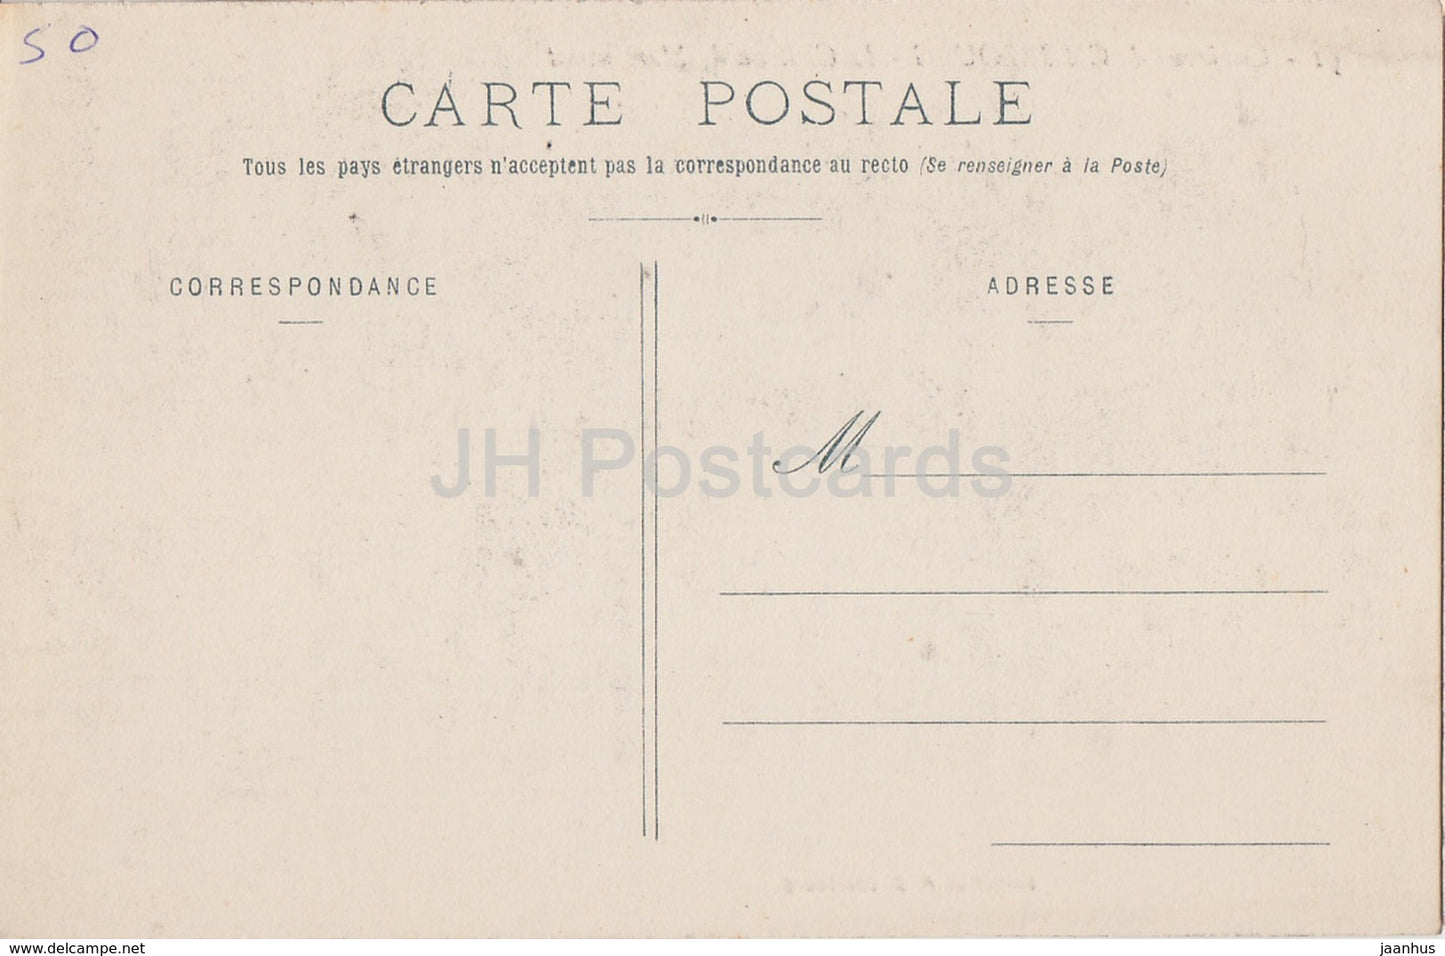 Environs de Cherbourg - Le Chateau de Martinvast - castle - old postcard - France - unused